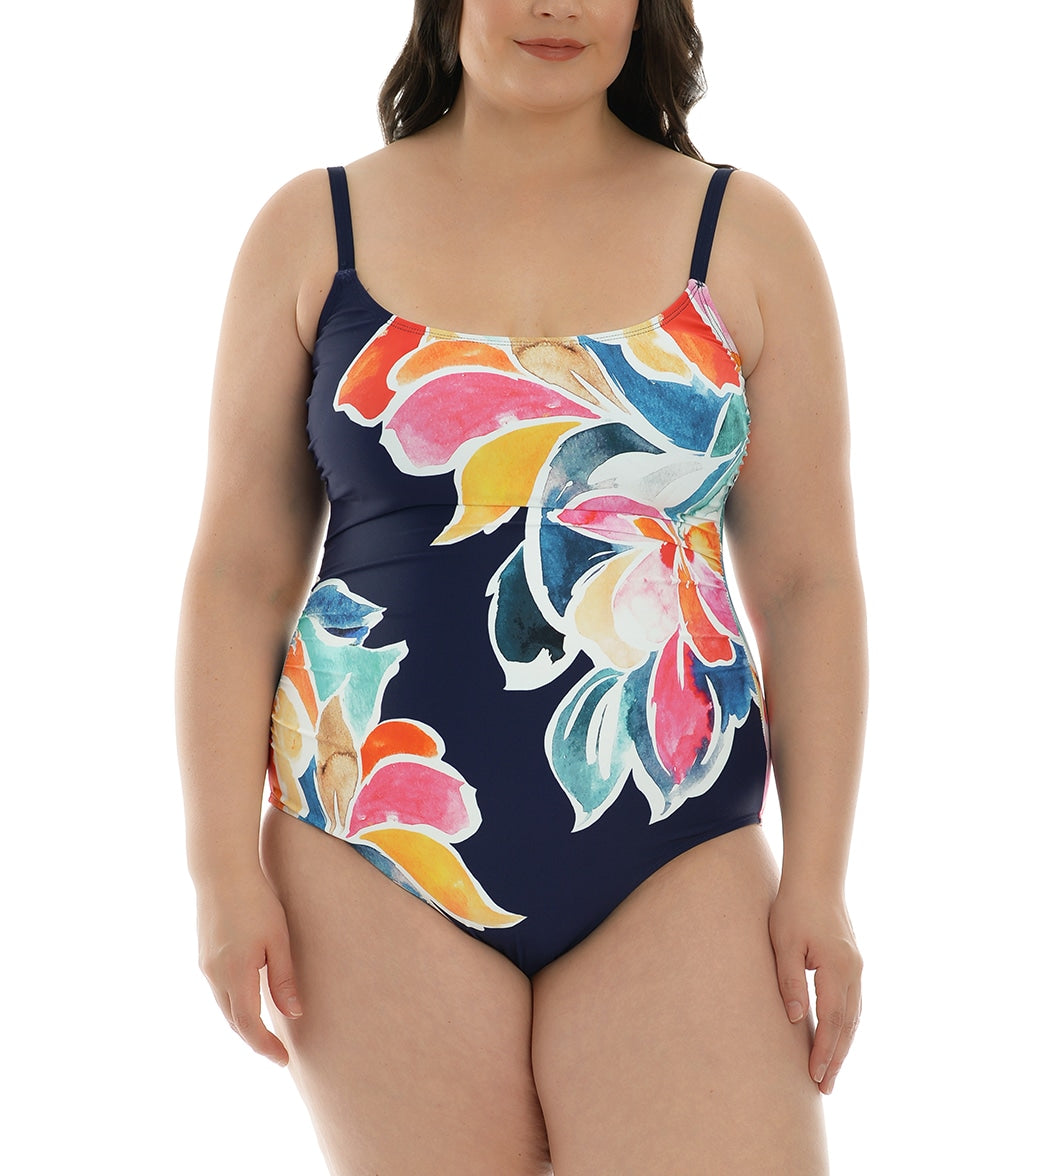 La Blanca Women's Plus Size Petals In Bloom Lingerie Mio One Piece Swimsuit - Indigo 16W - Swimoutlet.com